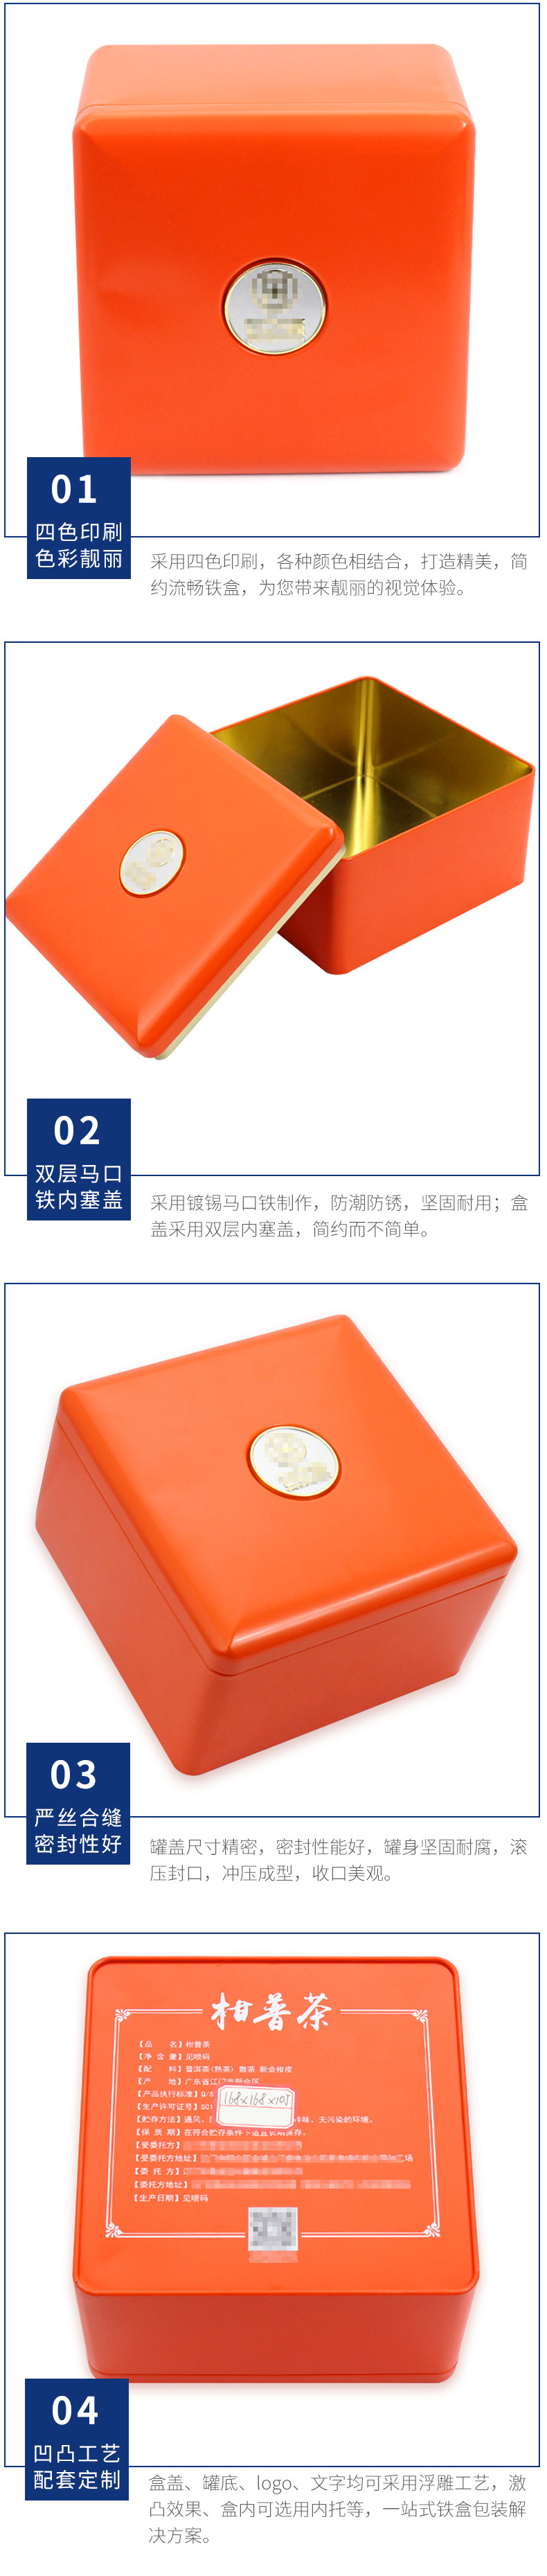 工厂定制250g装柑普茶包装铁盒 带标牌大红柑普茶罐包装盒定做示例图14